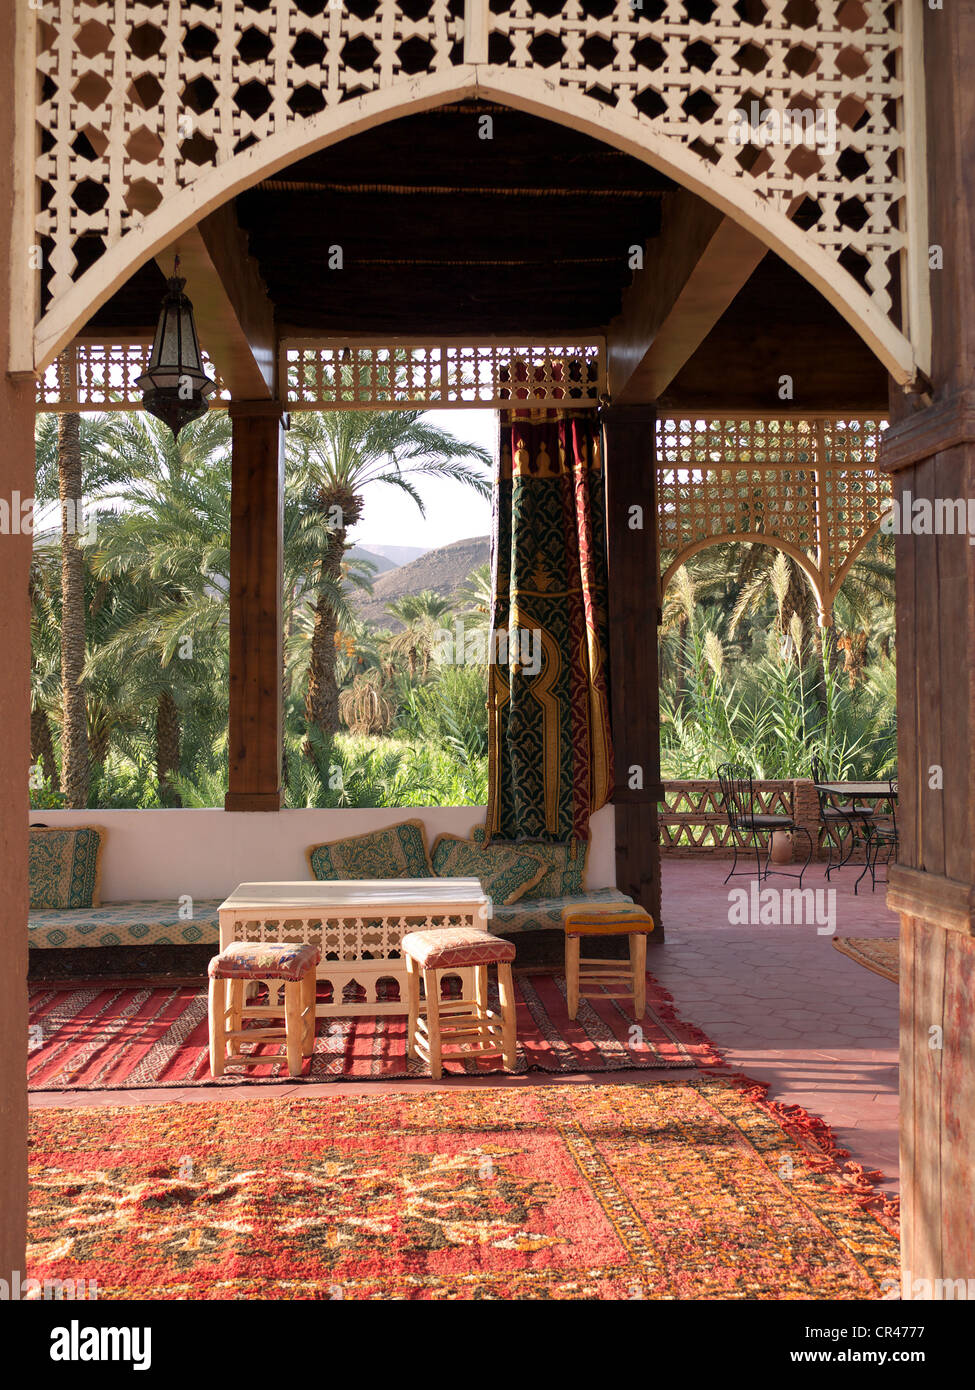 Décor traditionnel marocain dans un riad dans un hôtel converti de style kasbah, Agdz, vallée du Drâa, Maroc, Afrique du Nord, Afrique Banque D'Images